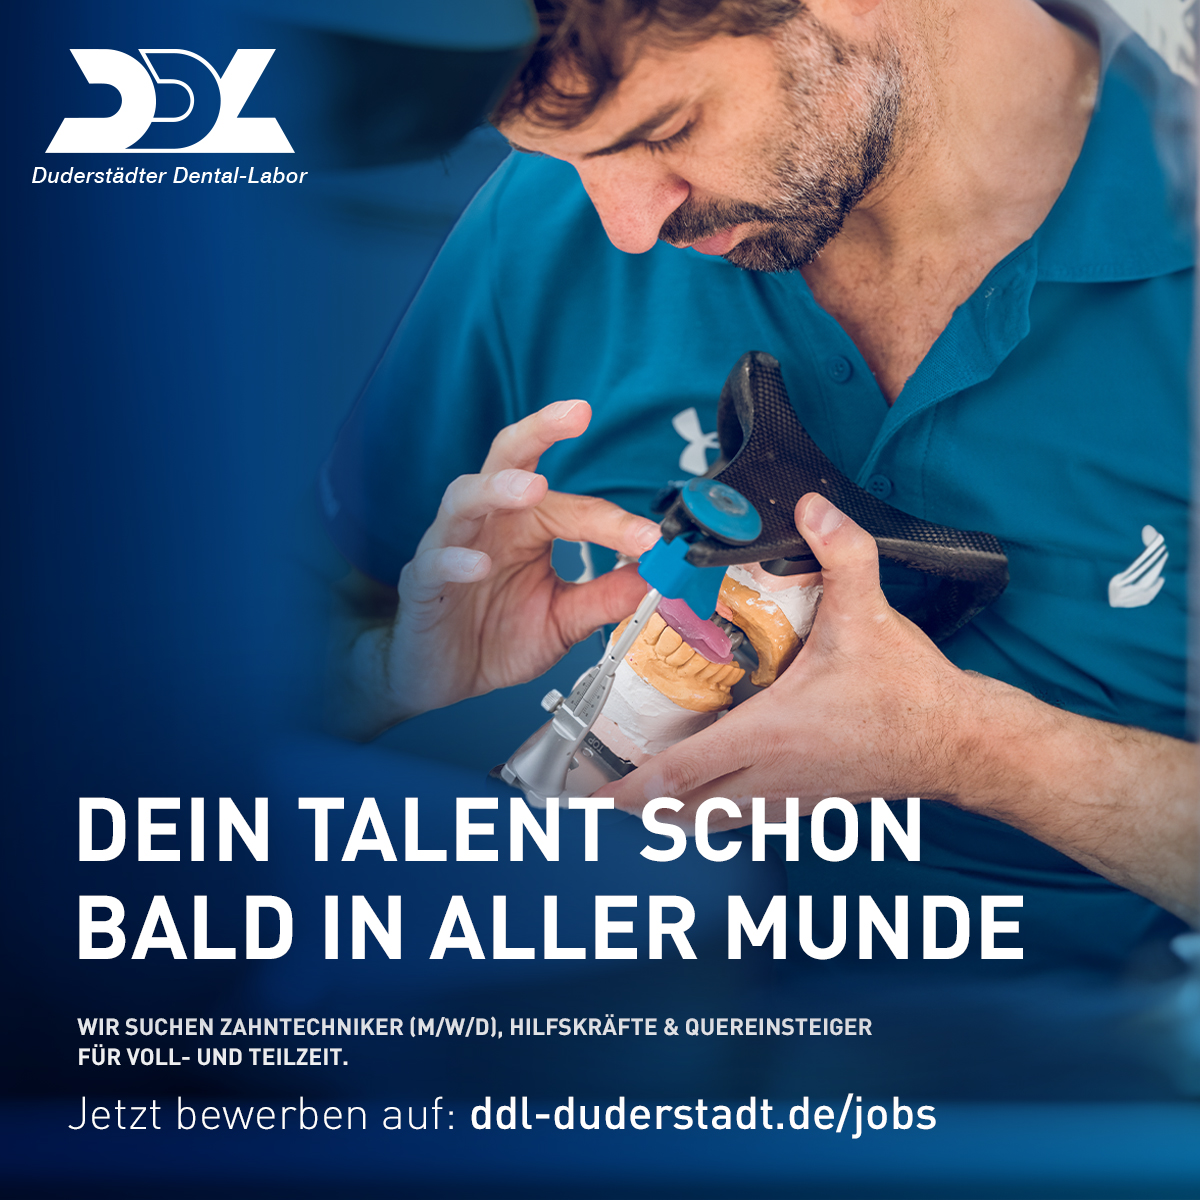 DDL sucht neue Mitarbeitende - Zahntechniker Jobs in Duderstadt